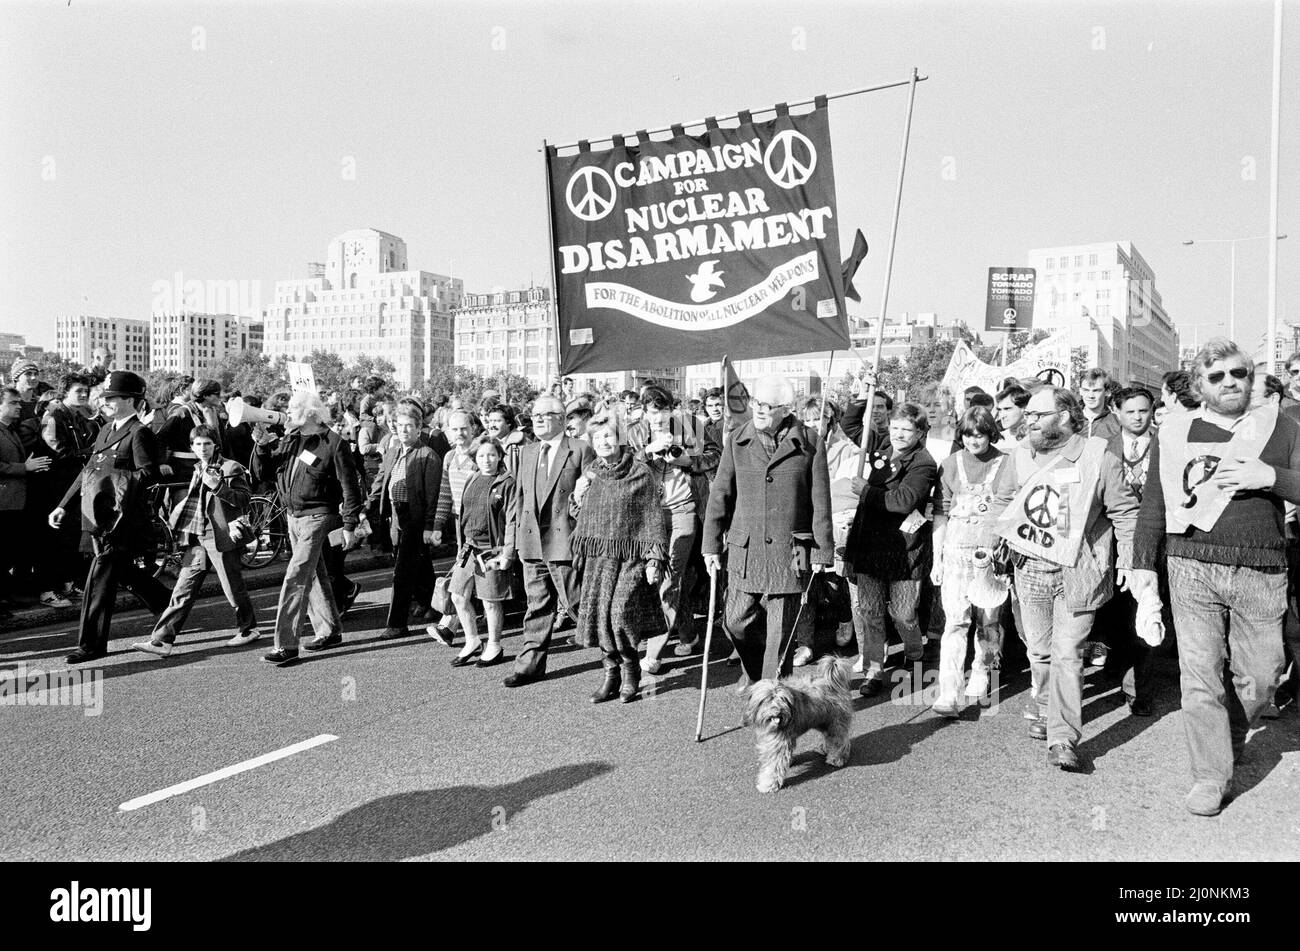 CND-Friedensmarsch in London 1983. Oktober Michael Foot führt die Kundgebung über die Waterloo Bridge an. Foto aufgenommen am 22.. Oktober 1983 FRAU JILL CRAIGIE Stockfoto